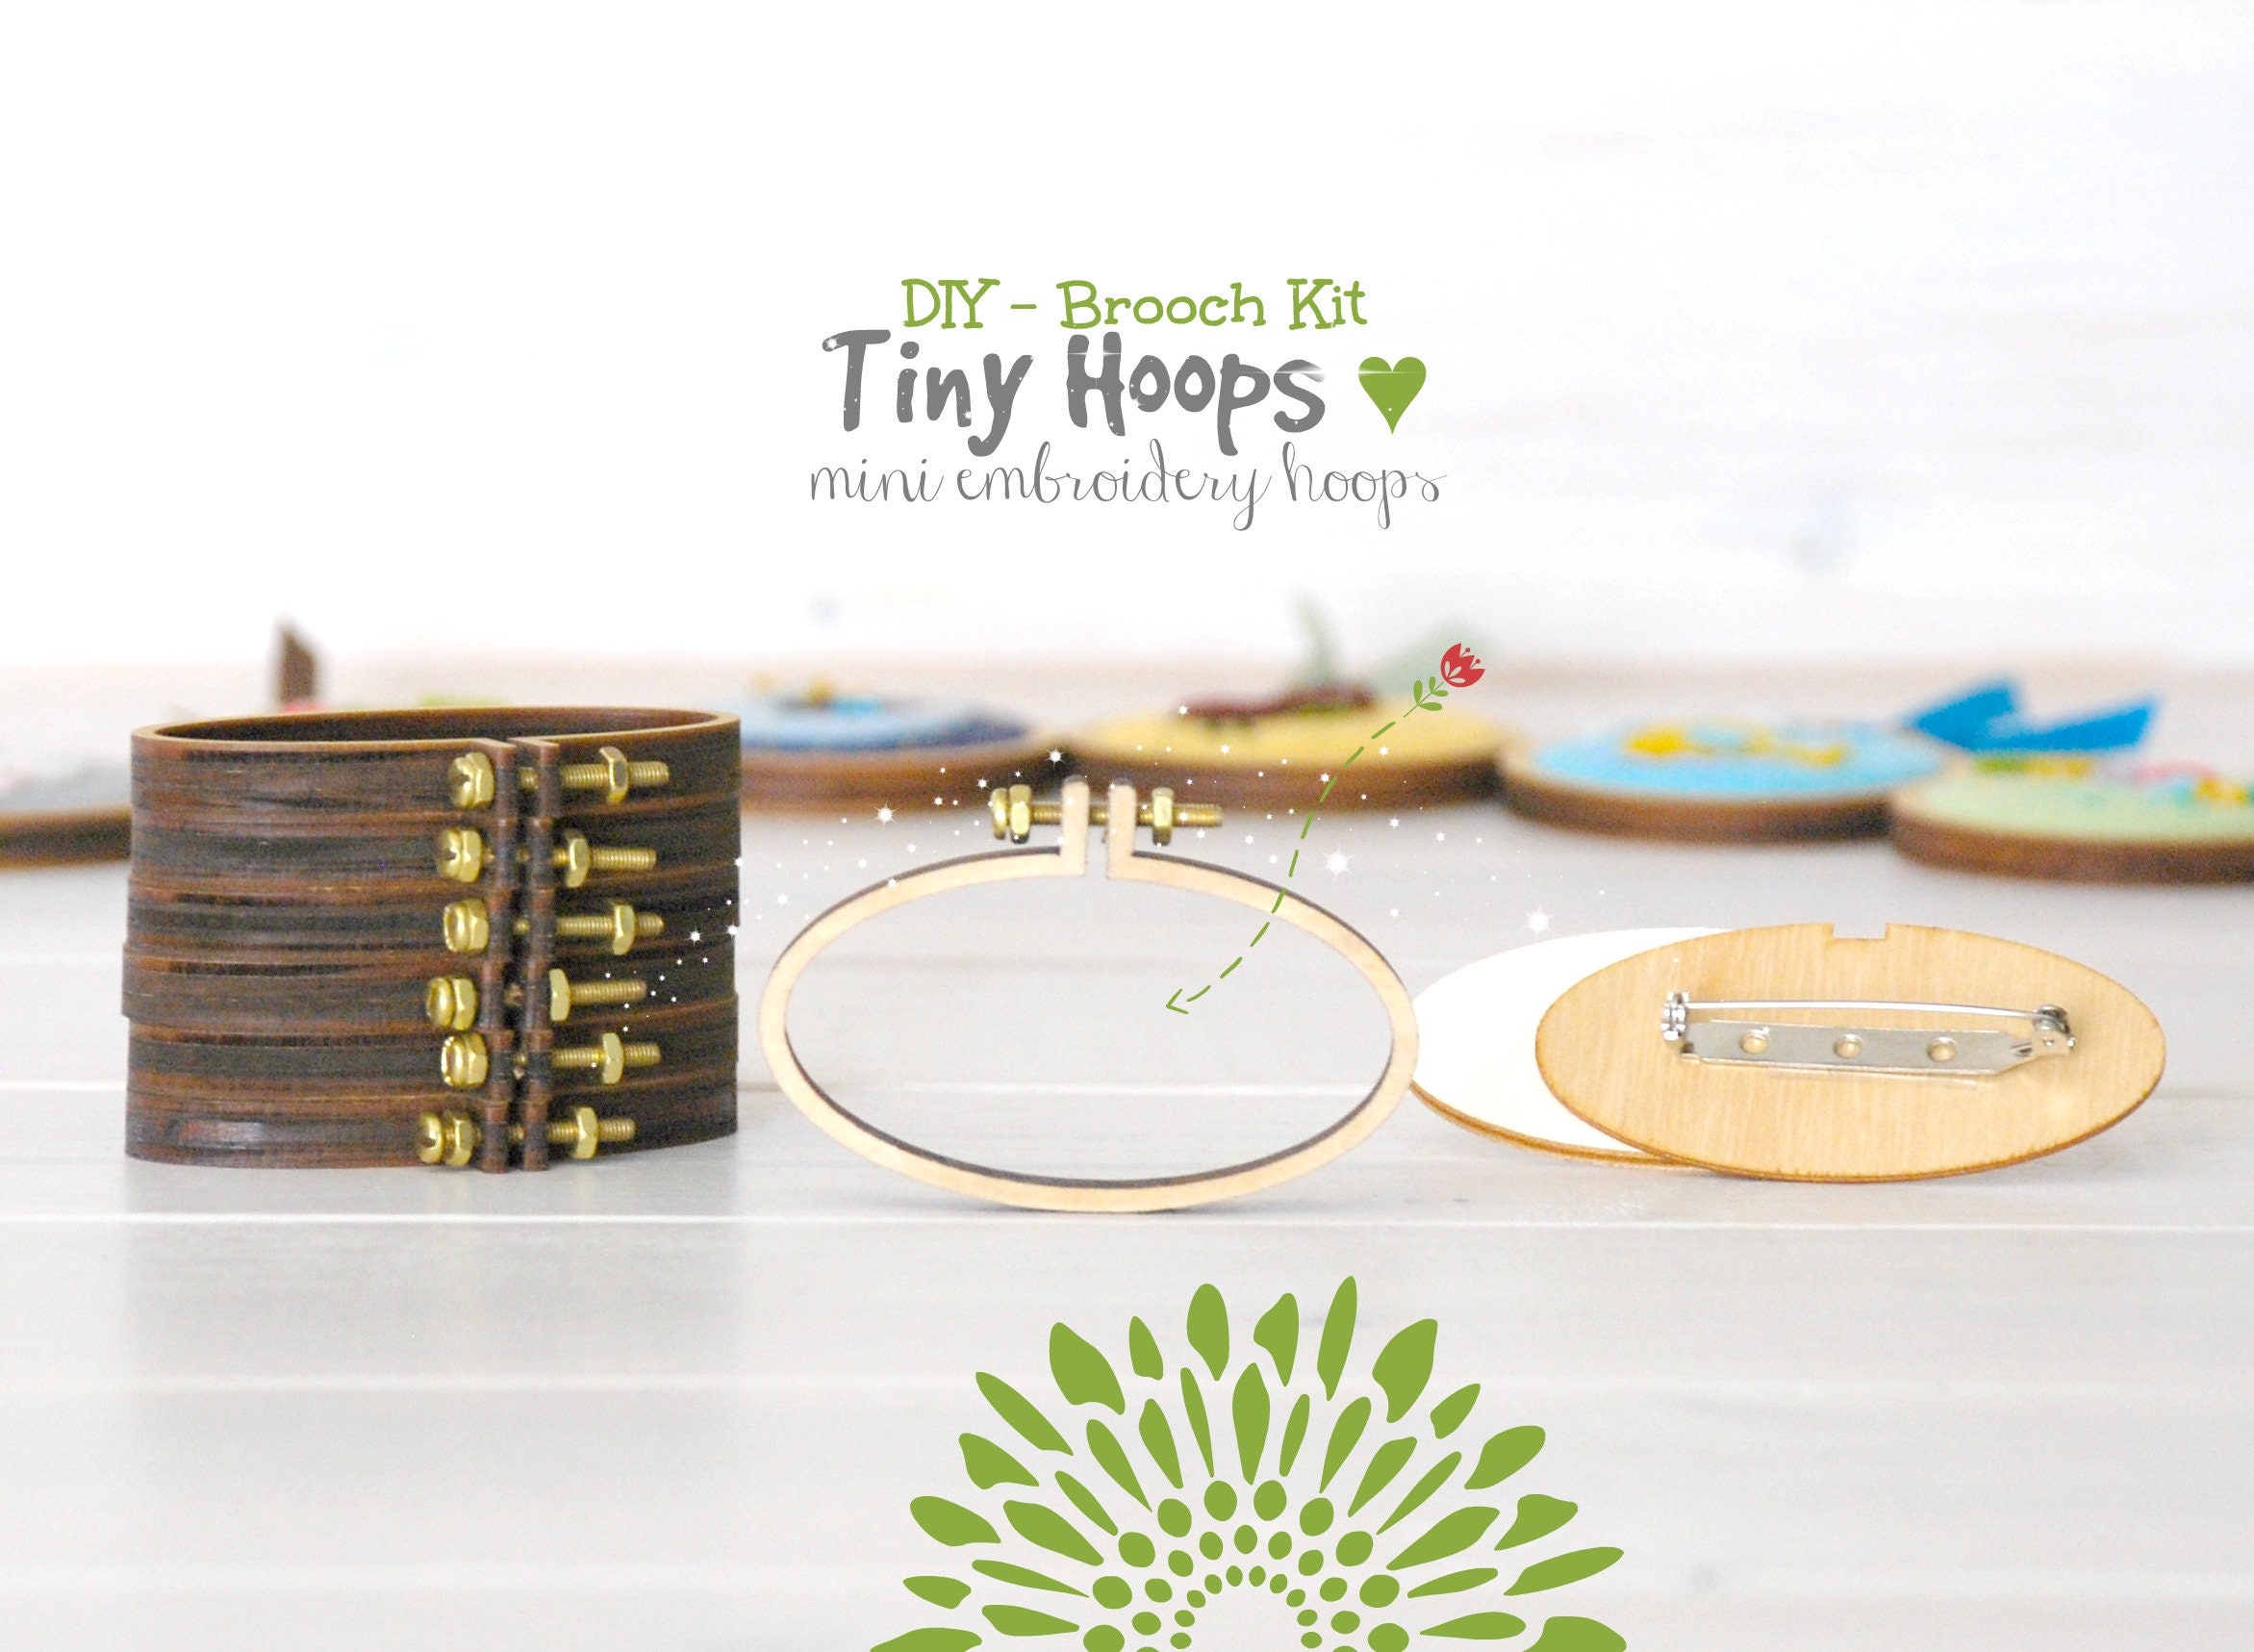 DIY Mini Embroidery Hoop Frame DIY Tiny Hoop Kit 62mm x 34mm Oval Embroidery Hoop Miniature Embroidery Hoops Mini Oval Hoop Frame L